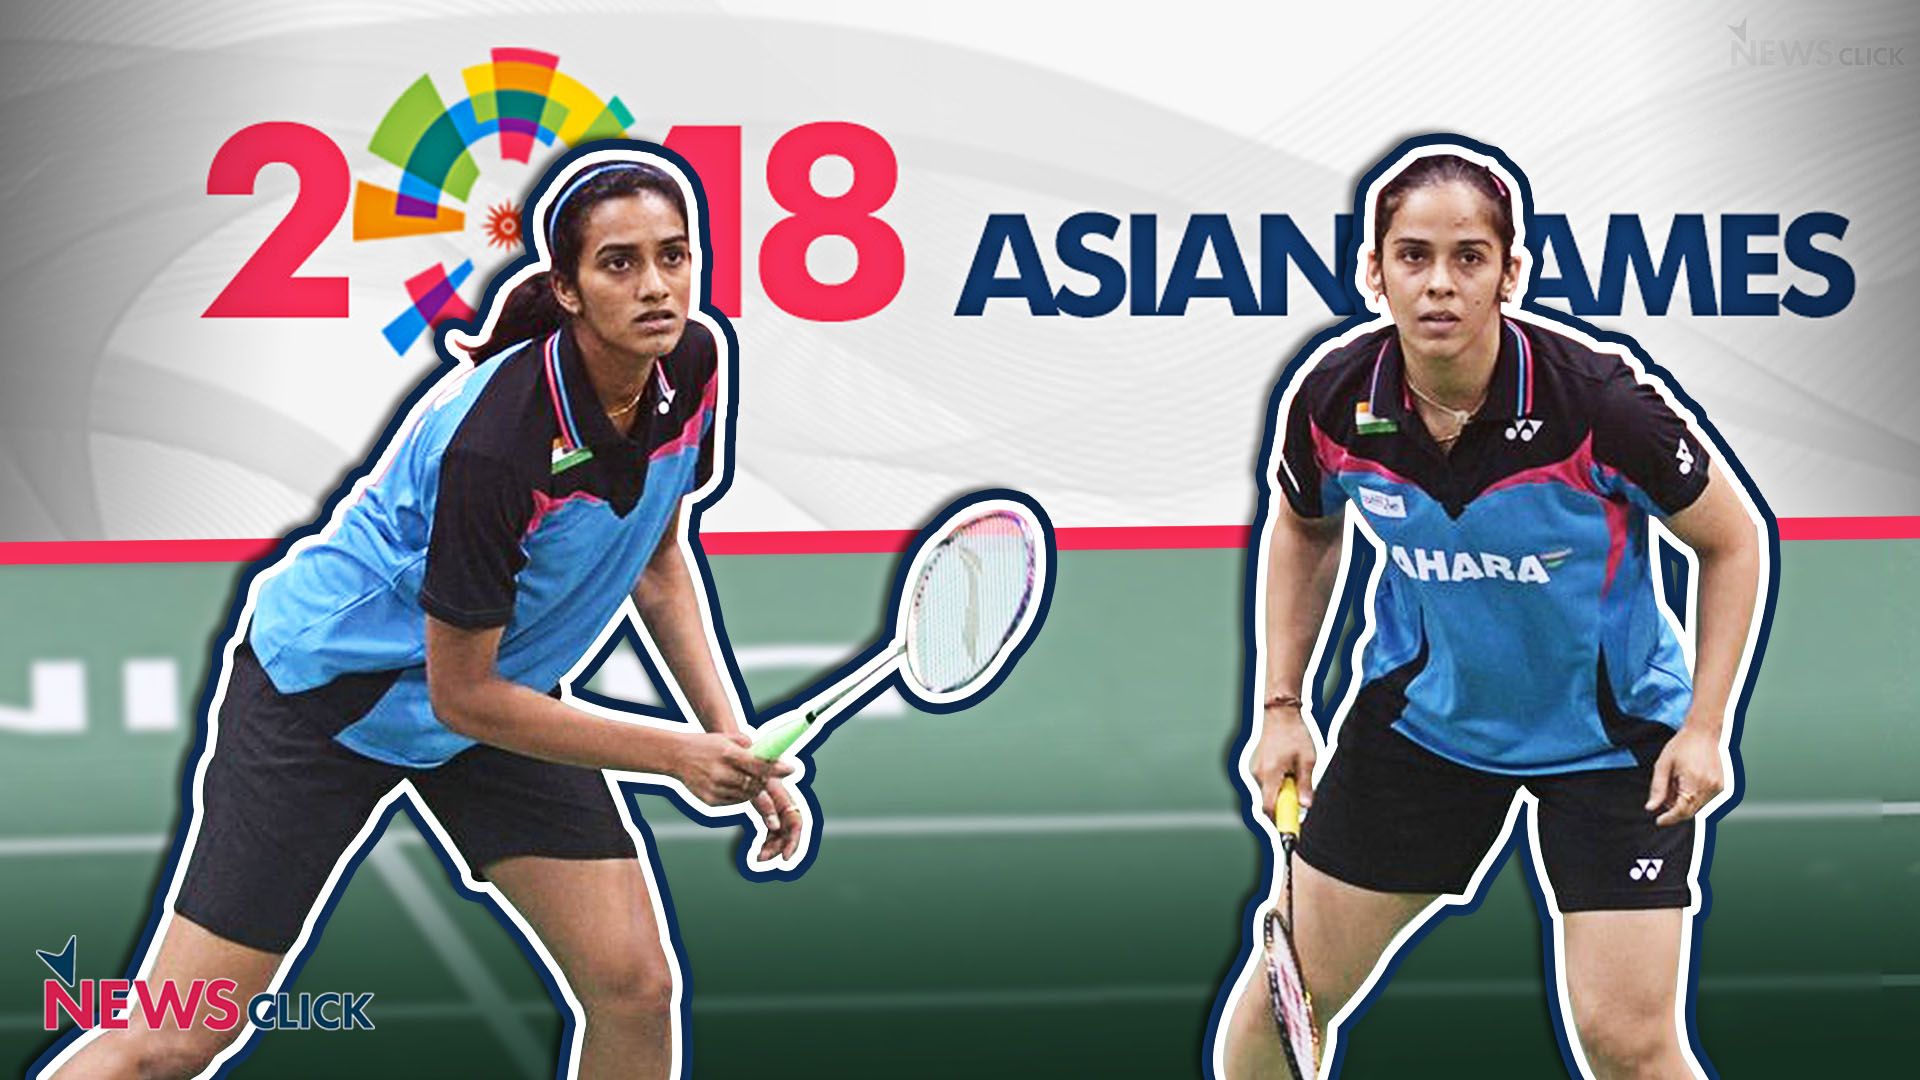 PV Sindhu, Saina Nehwal and the Still Elusive Asian Games Medal